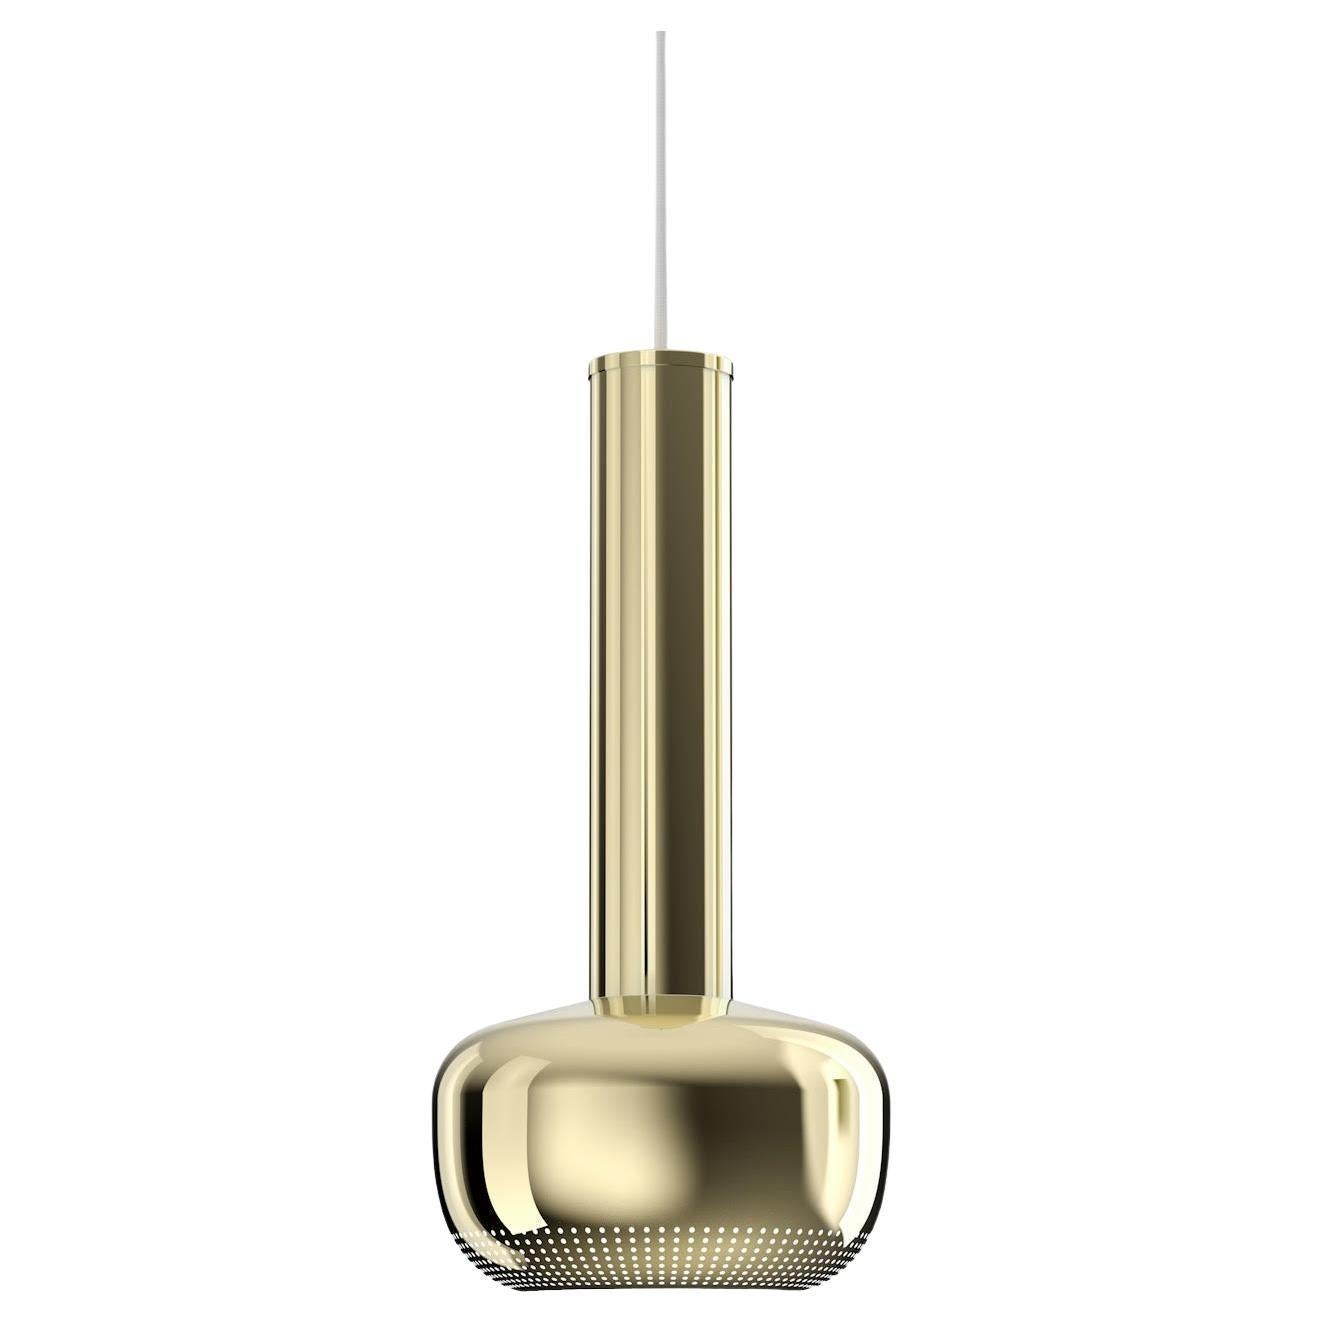 VL56 Pendant Lamp by Louis Poulsen. For Sale